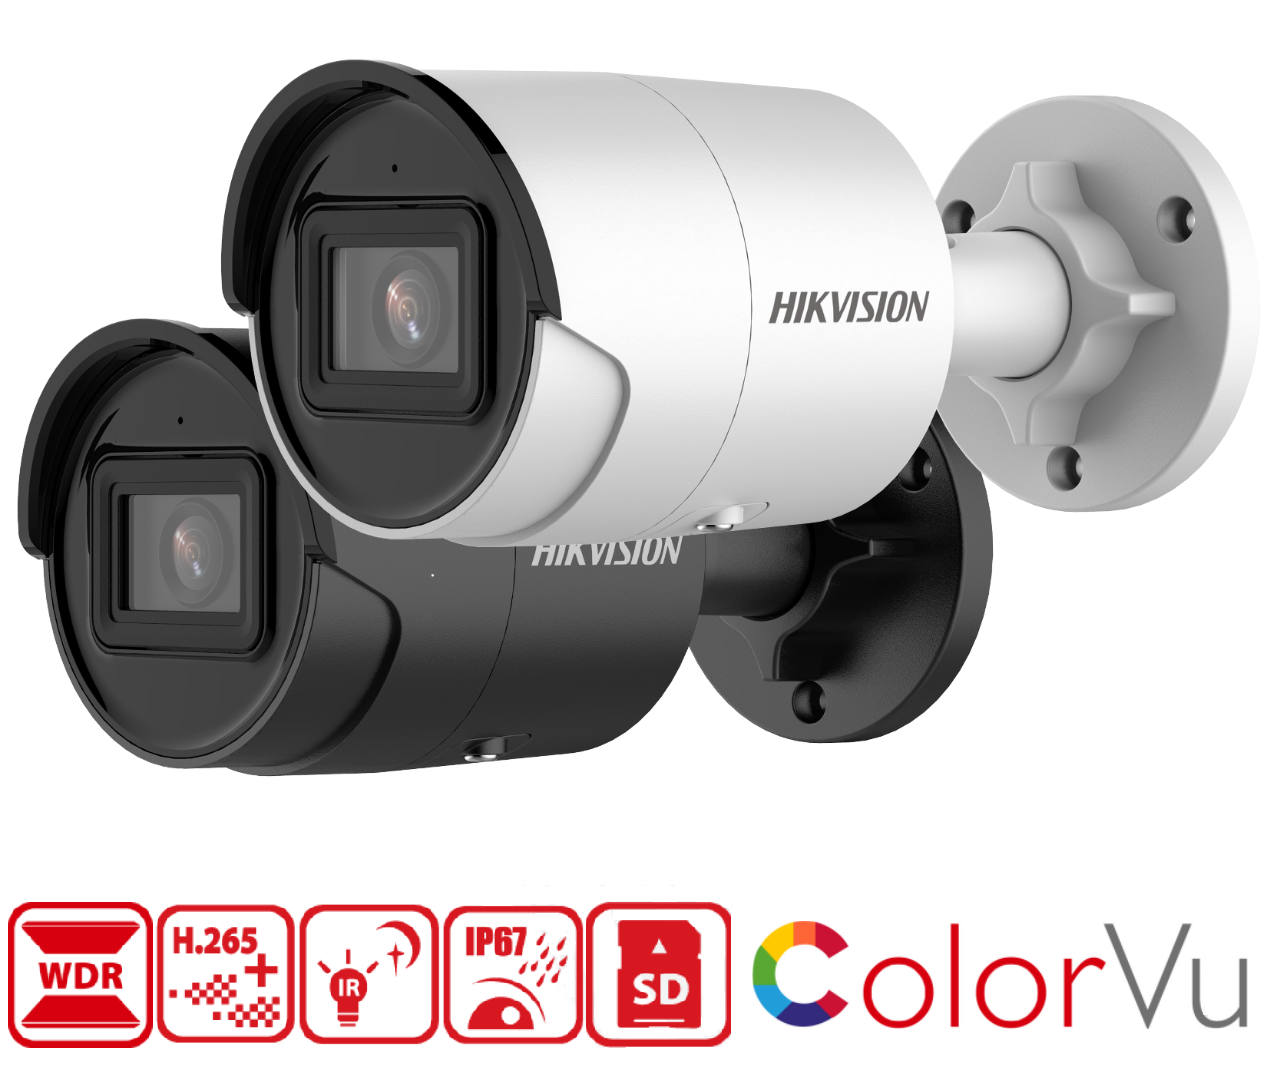 Kamera Hikvision  DS-2CD2023G2-IU má rozlišení 2688 x 1520px při 25 fps, krytí IP67, 120dB WDR snímač DarkFighter, micro SD slot na 256GB kartu, podporu kodeku H.265, barevné noční vidění ColorVu a algoritmus hlubokého učení AcuSense 2.0 pro chytrou detekci pohybu.